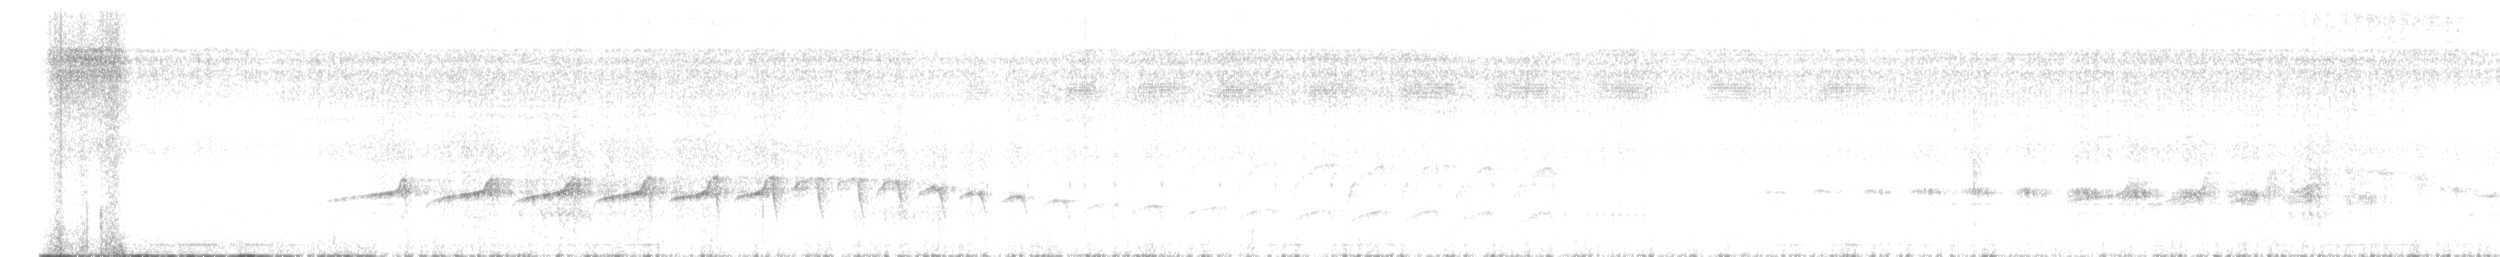 Ak Yüzlü Karıncakuşu - ML614693053